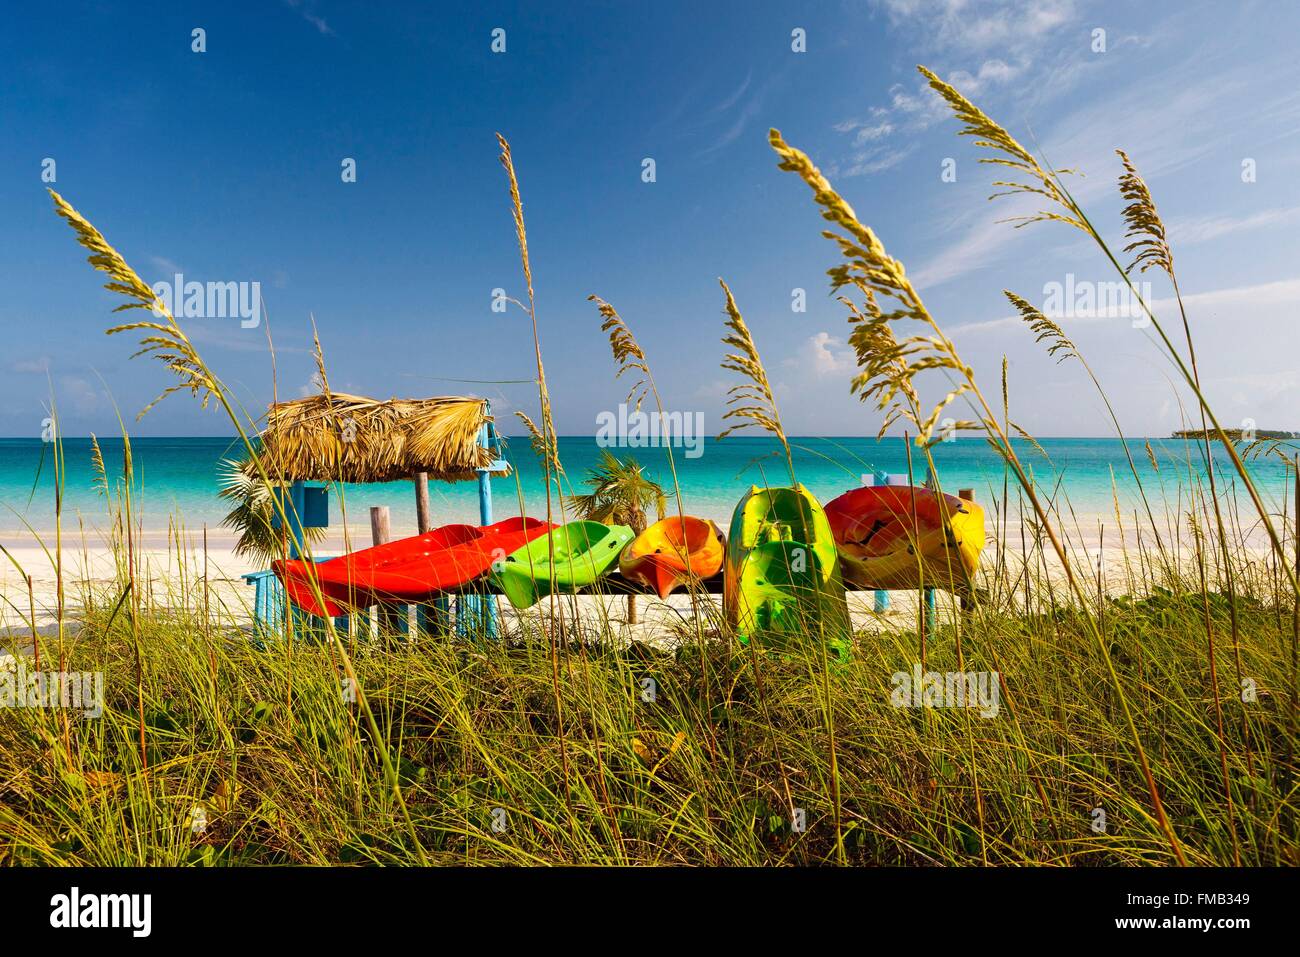 Cuba, Ciego de Avila, Jardines del Rey, Cayo Guillermo, vue sur la plage aux eaux turquoises avec des pirogues colorées Banque D'Images